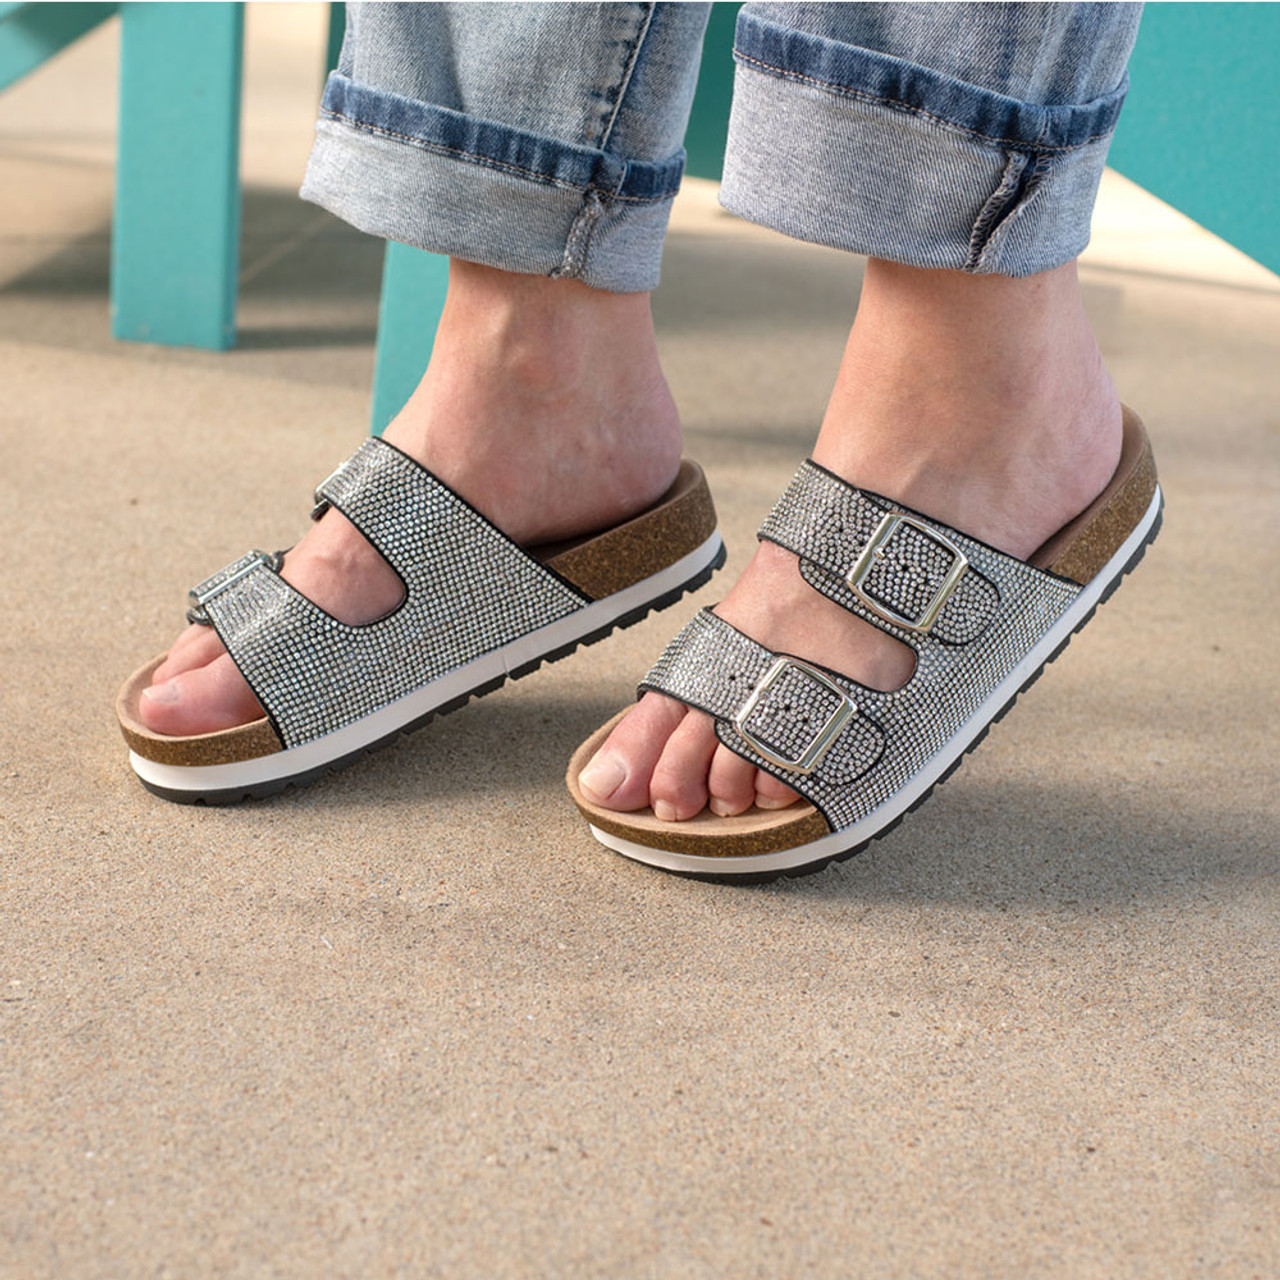 Two-Strap Crystal Footbed Slide Sandals